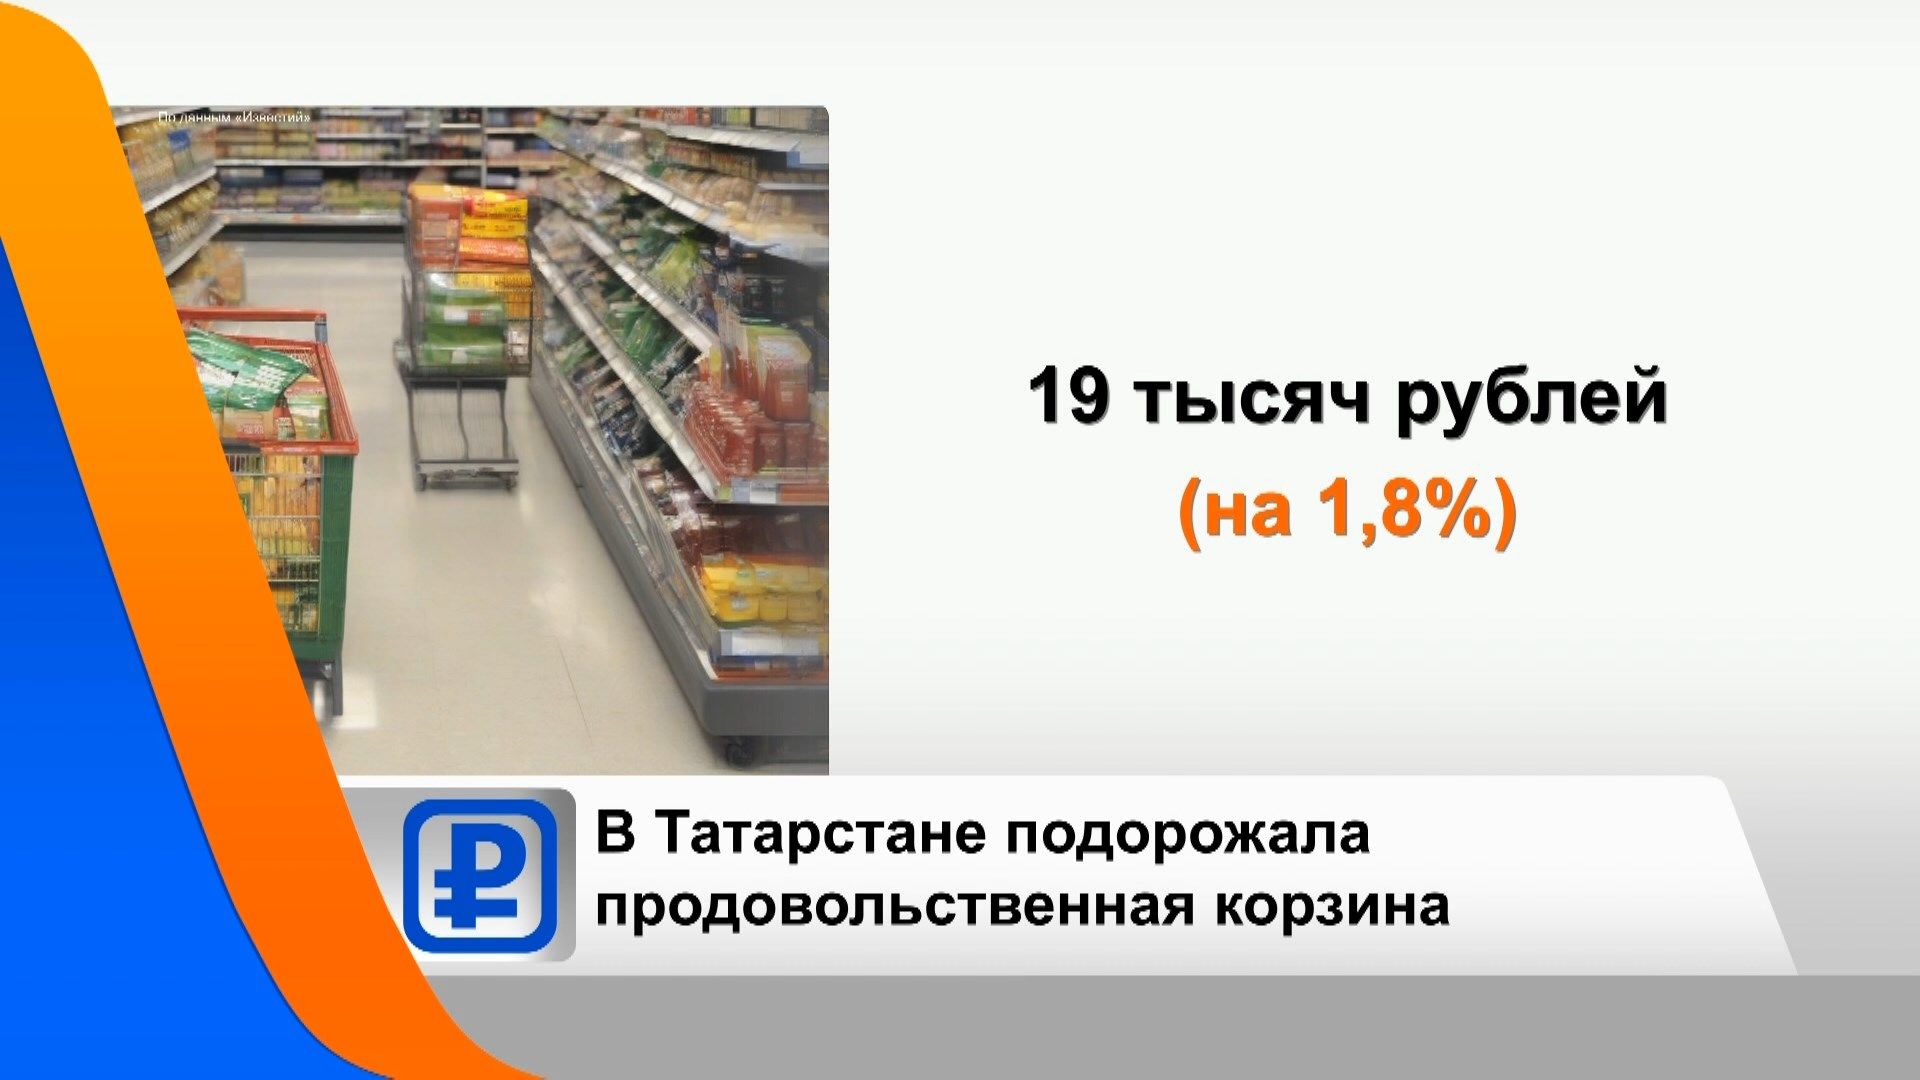 Продовольственная корзина в Татарстане подорожала до 19 тысяч рублей